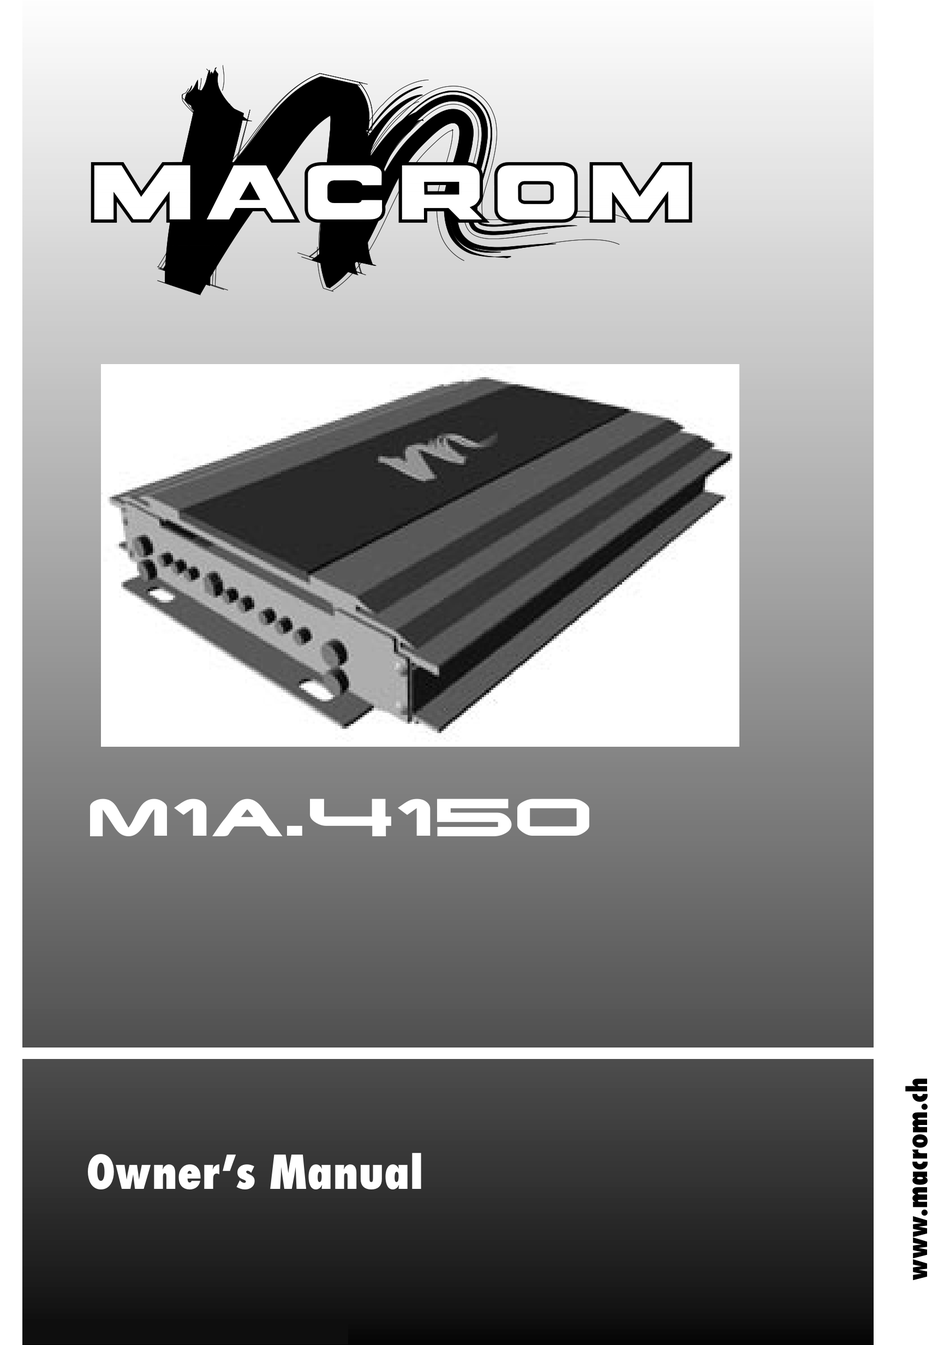 MACROM M1A.4150 OWNER'S MANUAL Pdf Download | ManualsLib